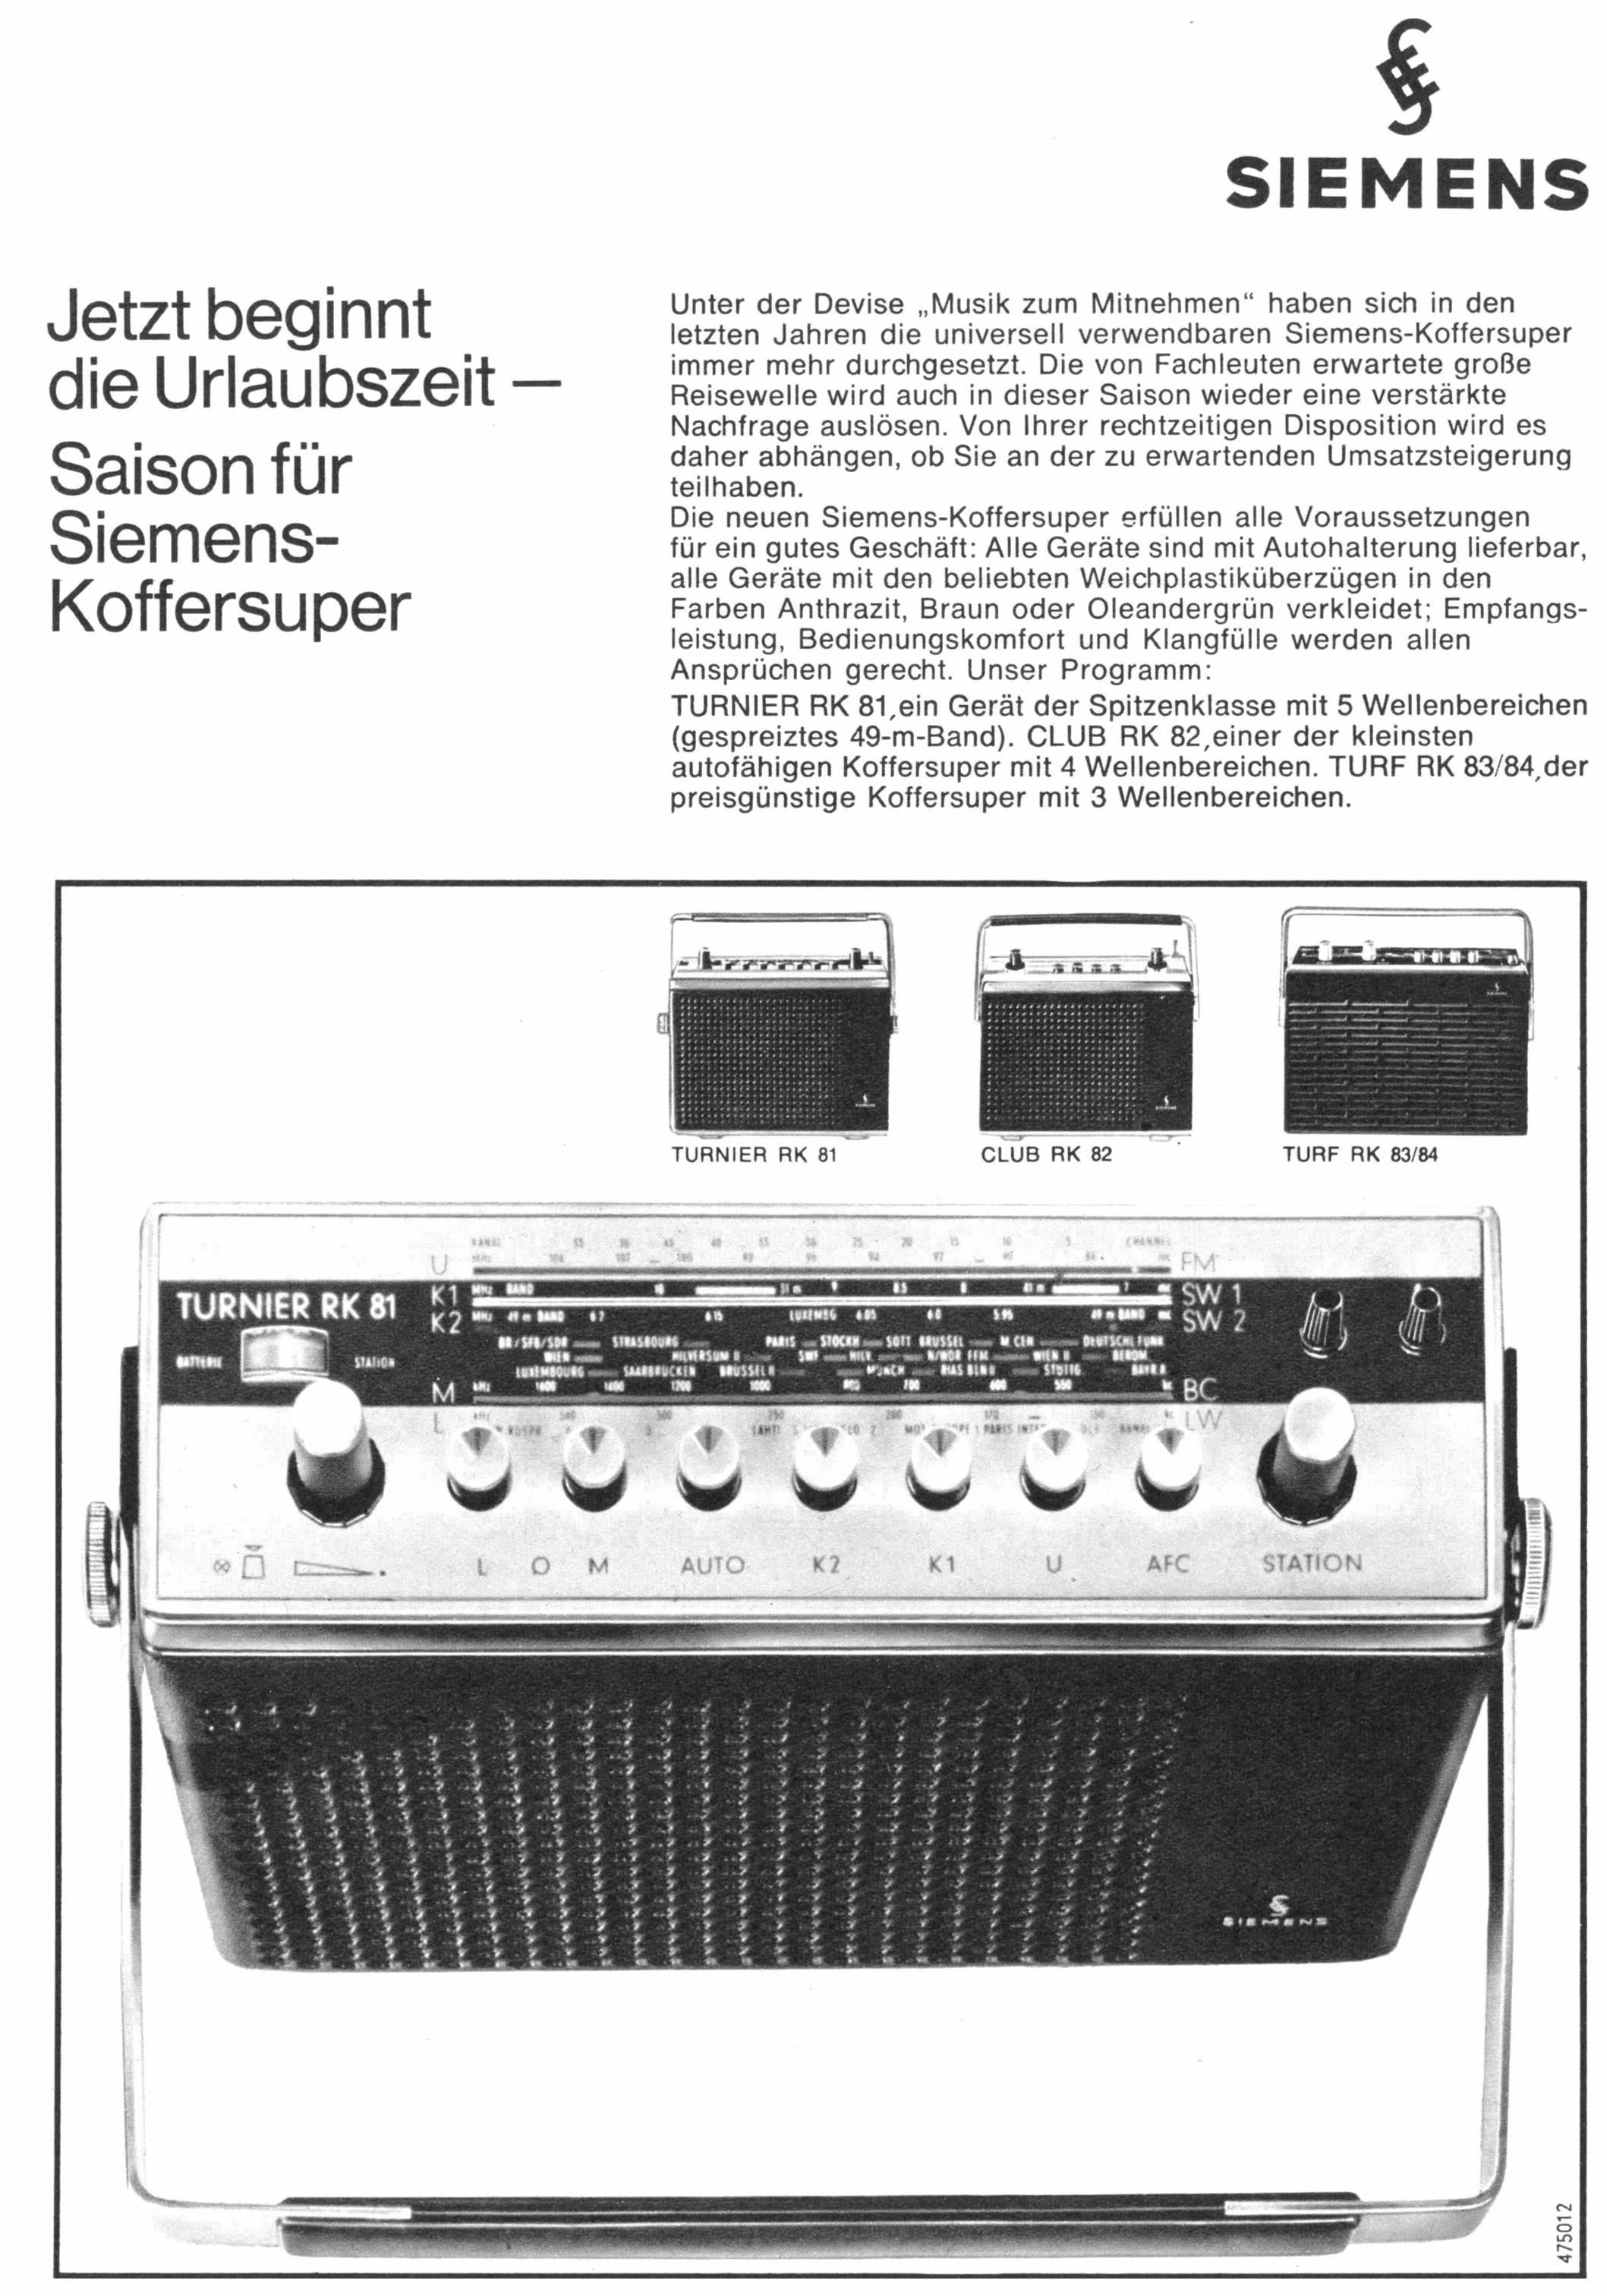 Siemens 1966 05.jpg